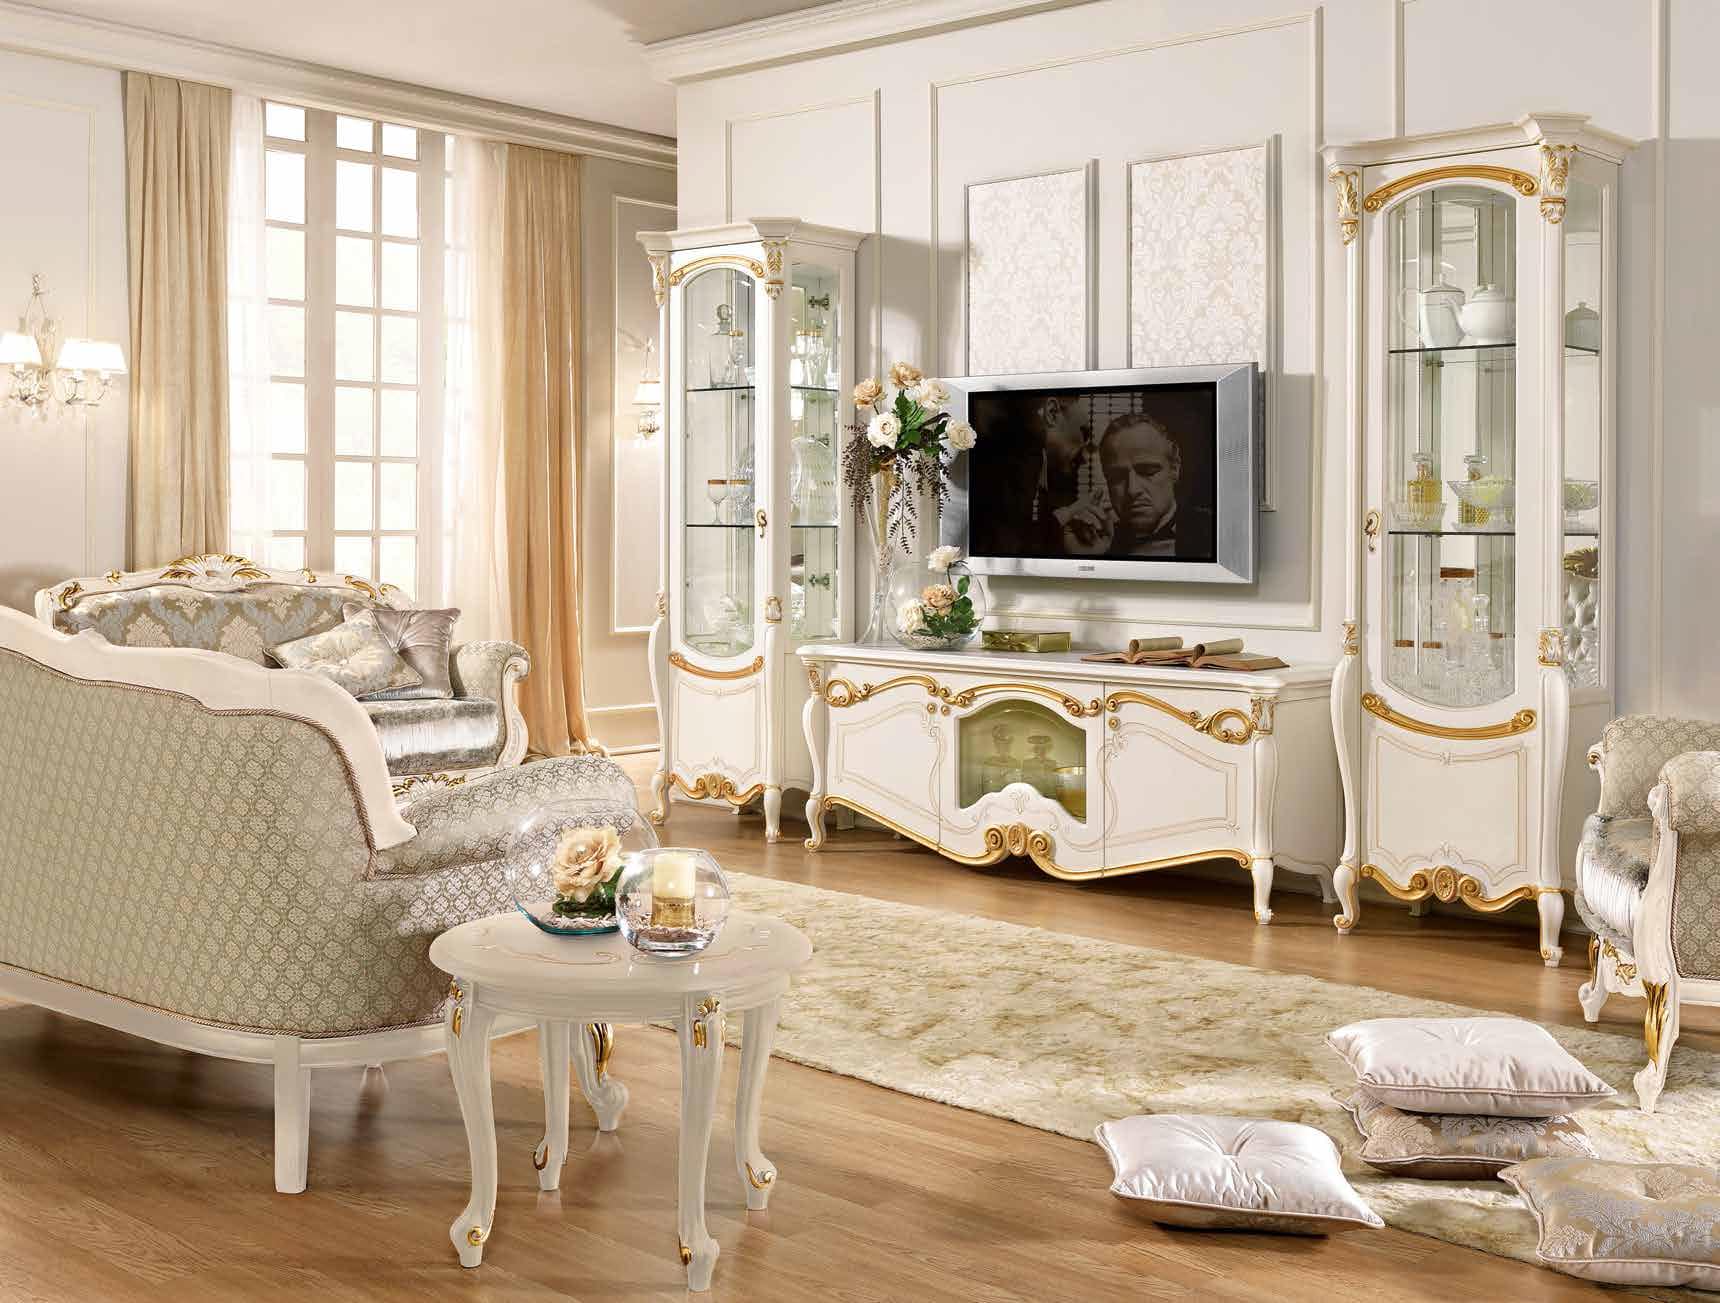 Итальянская мебель в гостиной - признак отменного вкуса